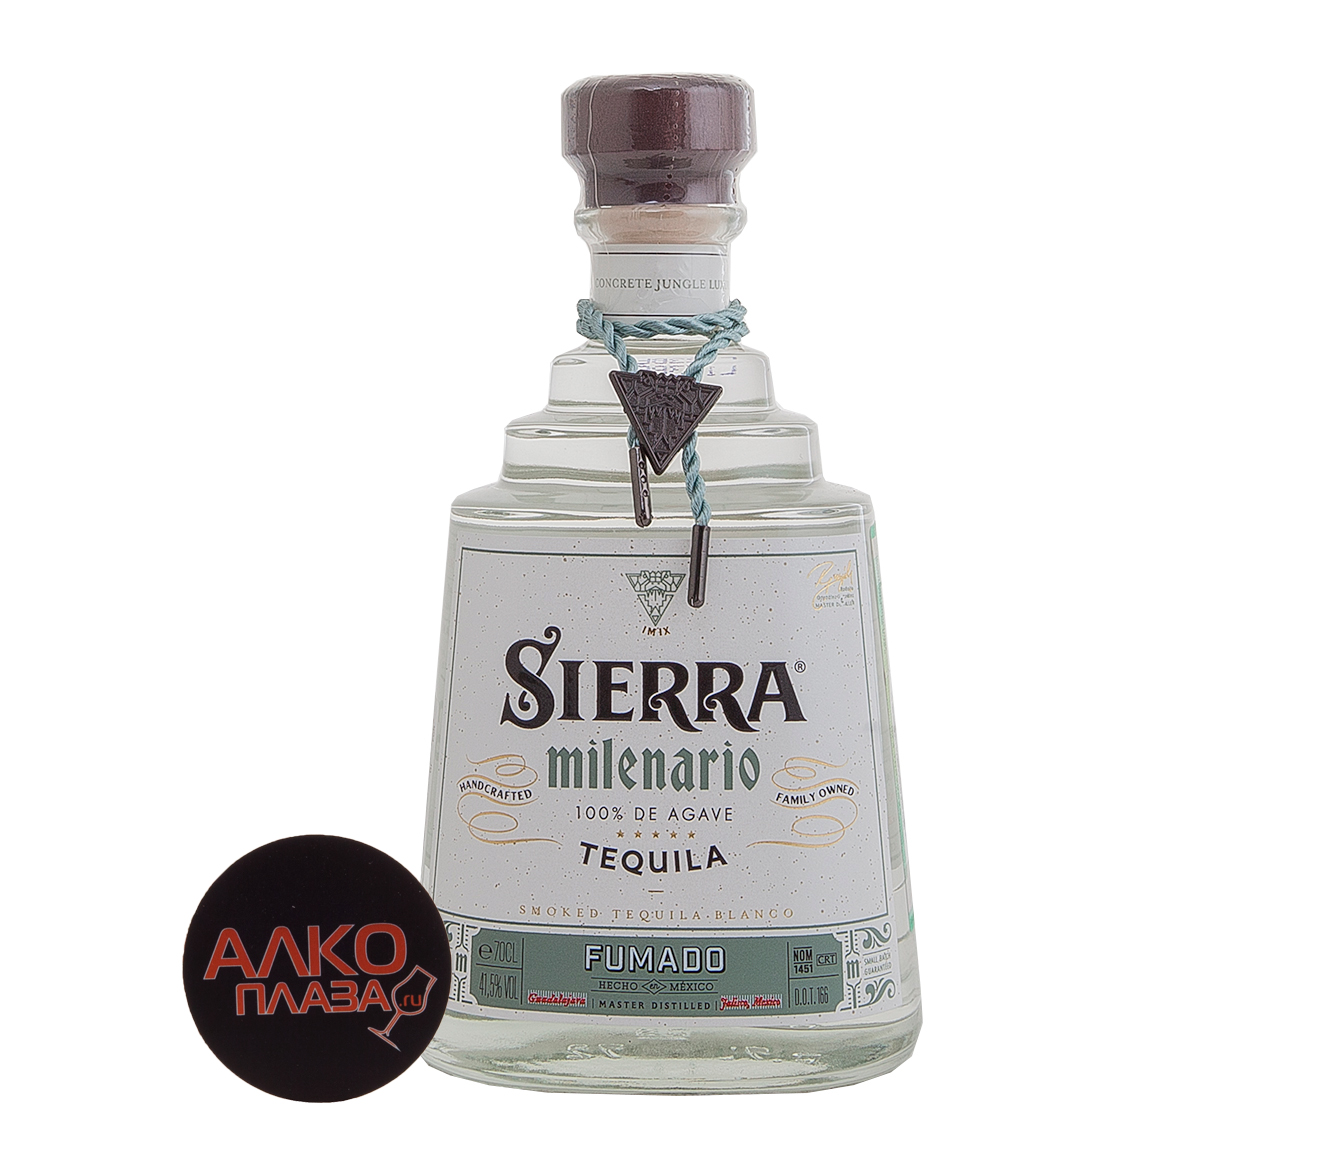 Tequila Sierra milenario Fumado - текила Сиерра Миленарио Фумадо 100% агава 0.7 л